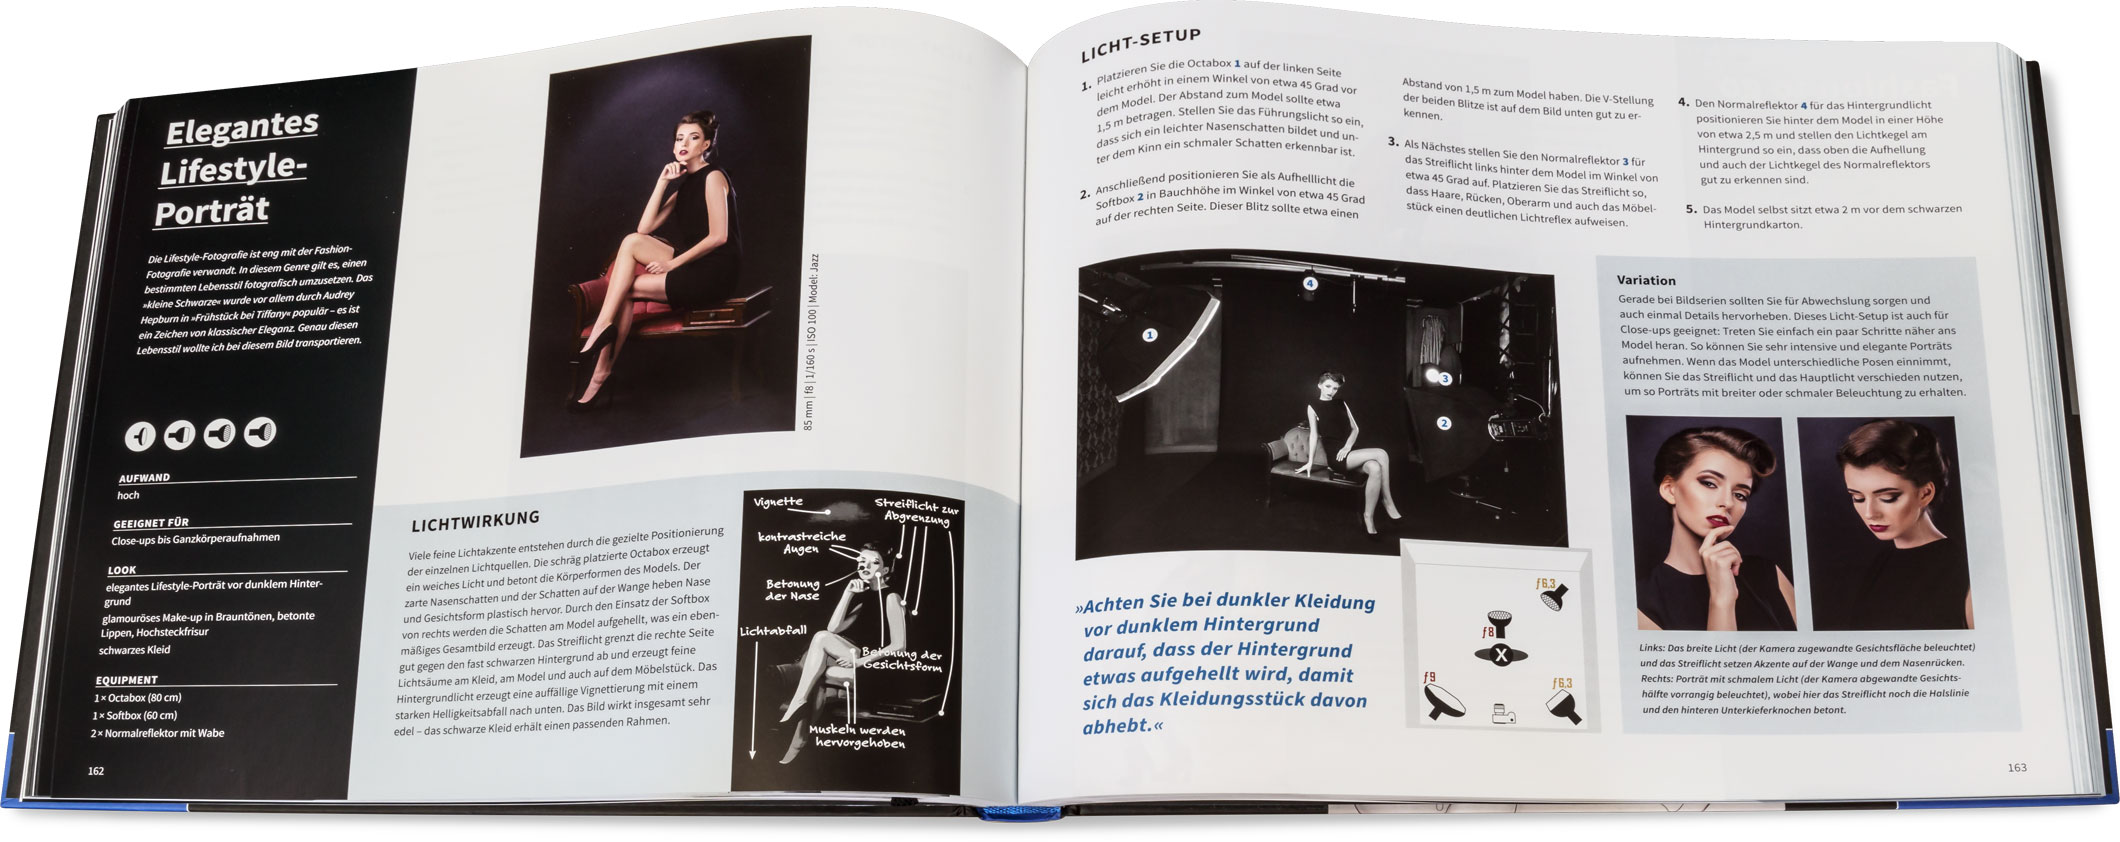 Blick ins Buch: Studio - Licht-Setups und Bildideen für gelungene Porträts